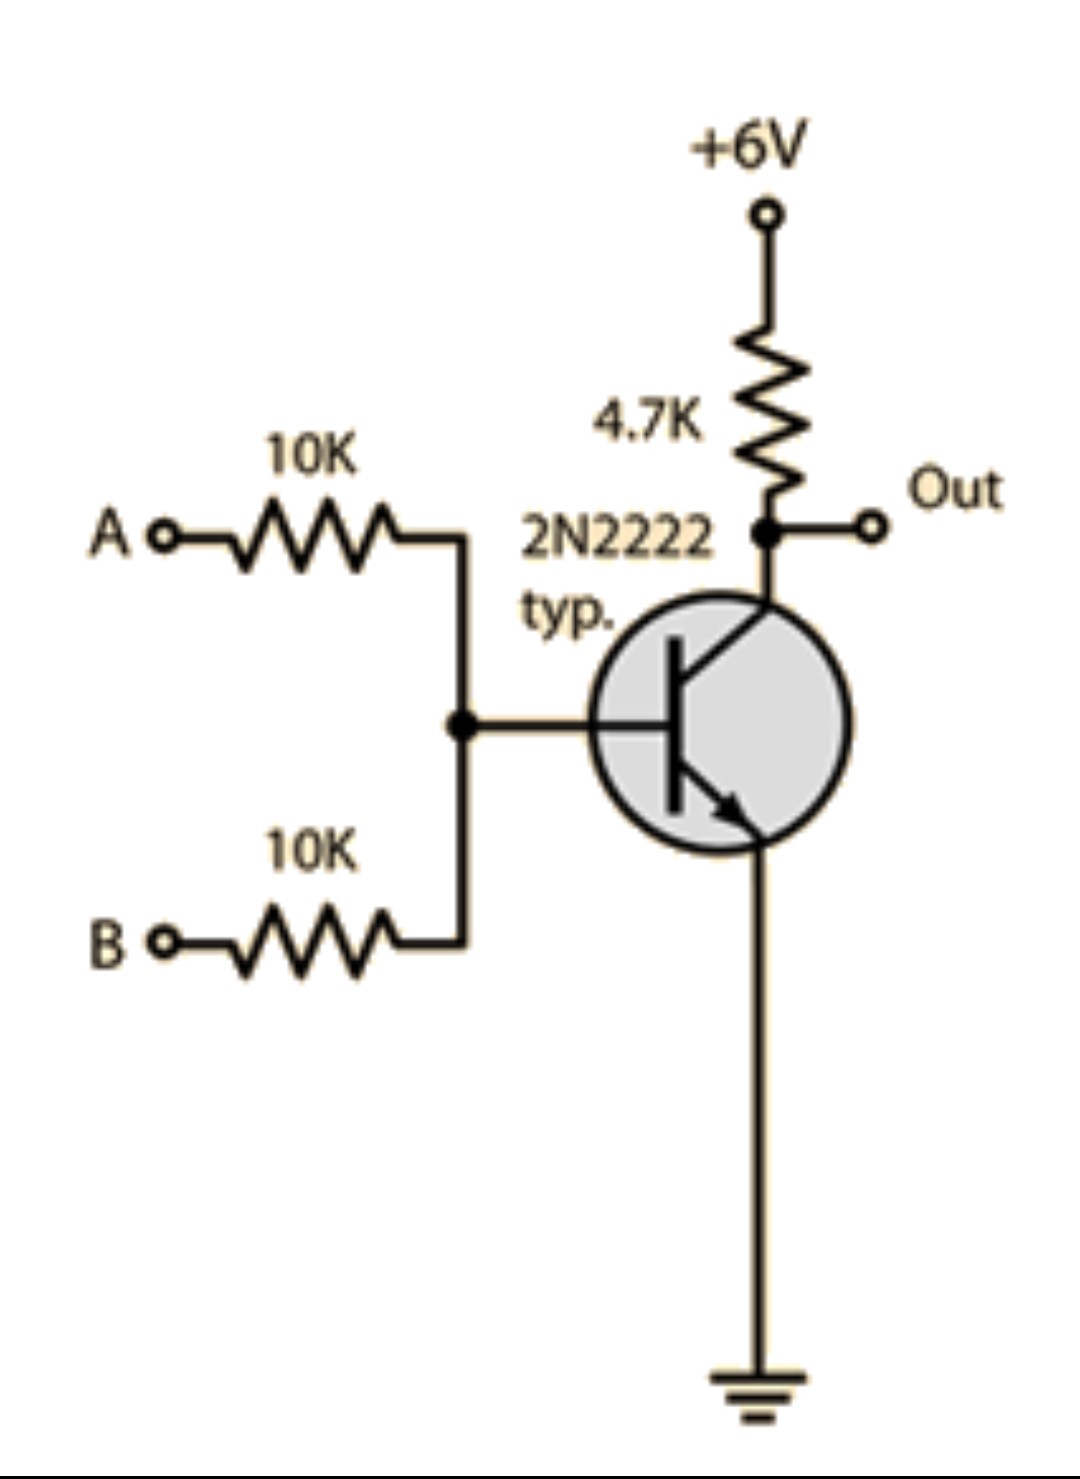 Register-Transistor Based NOR gate